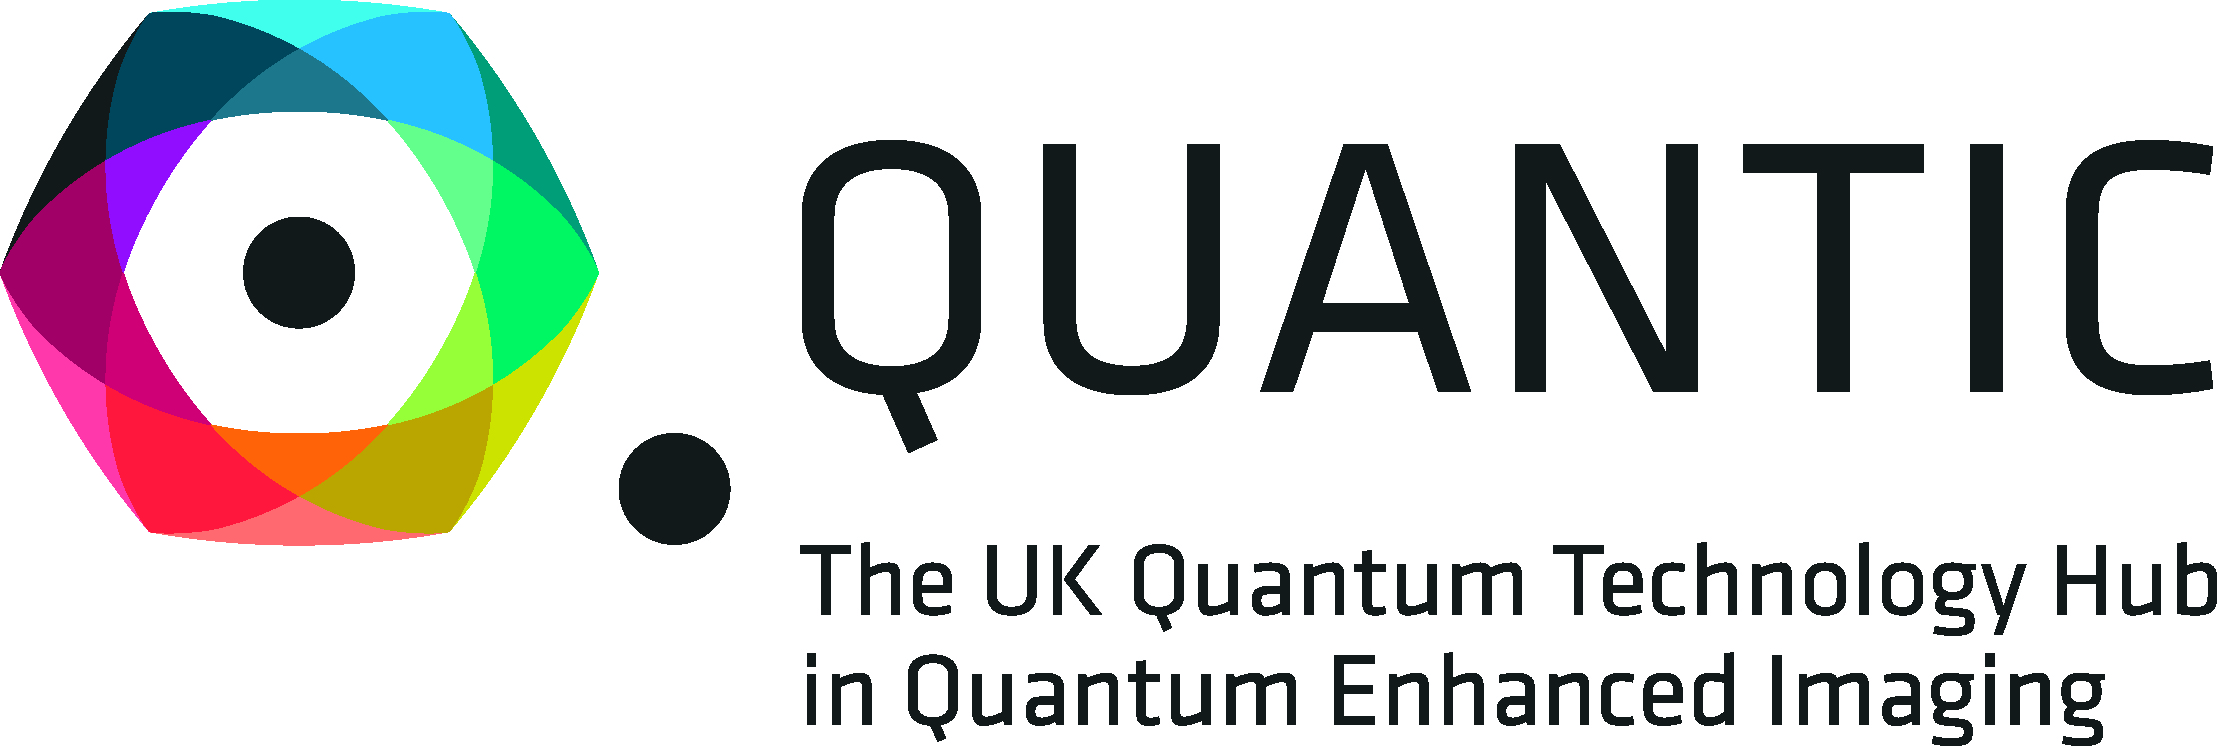 QuantIC Logo